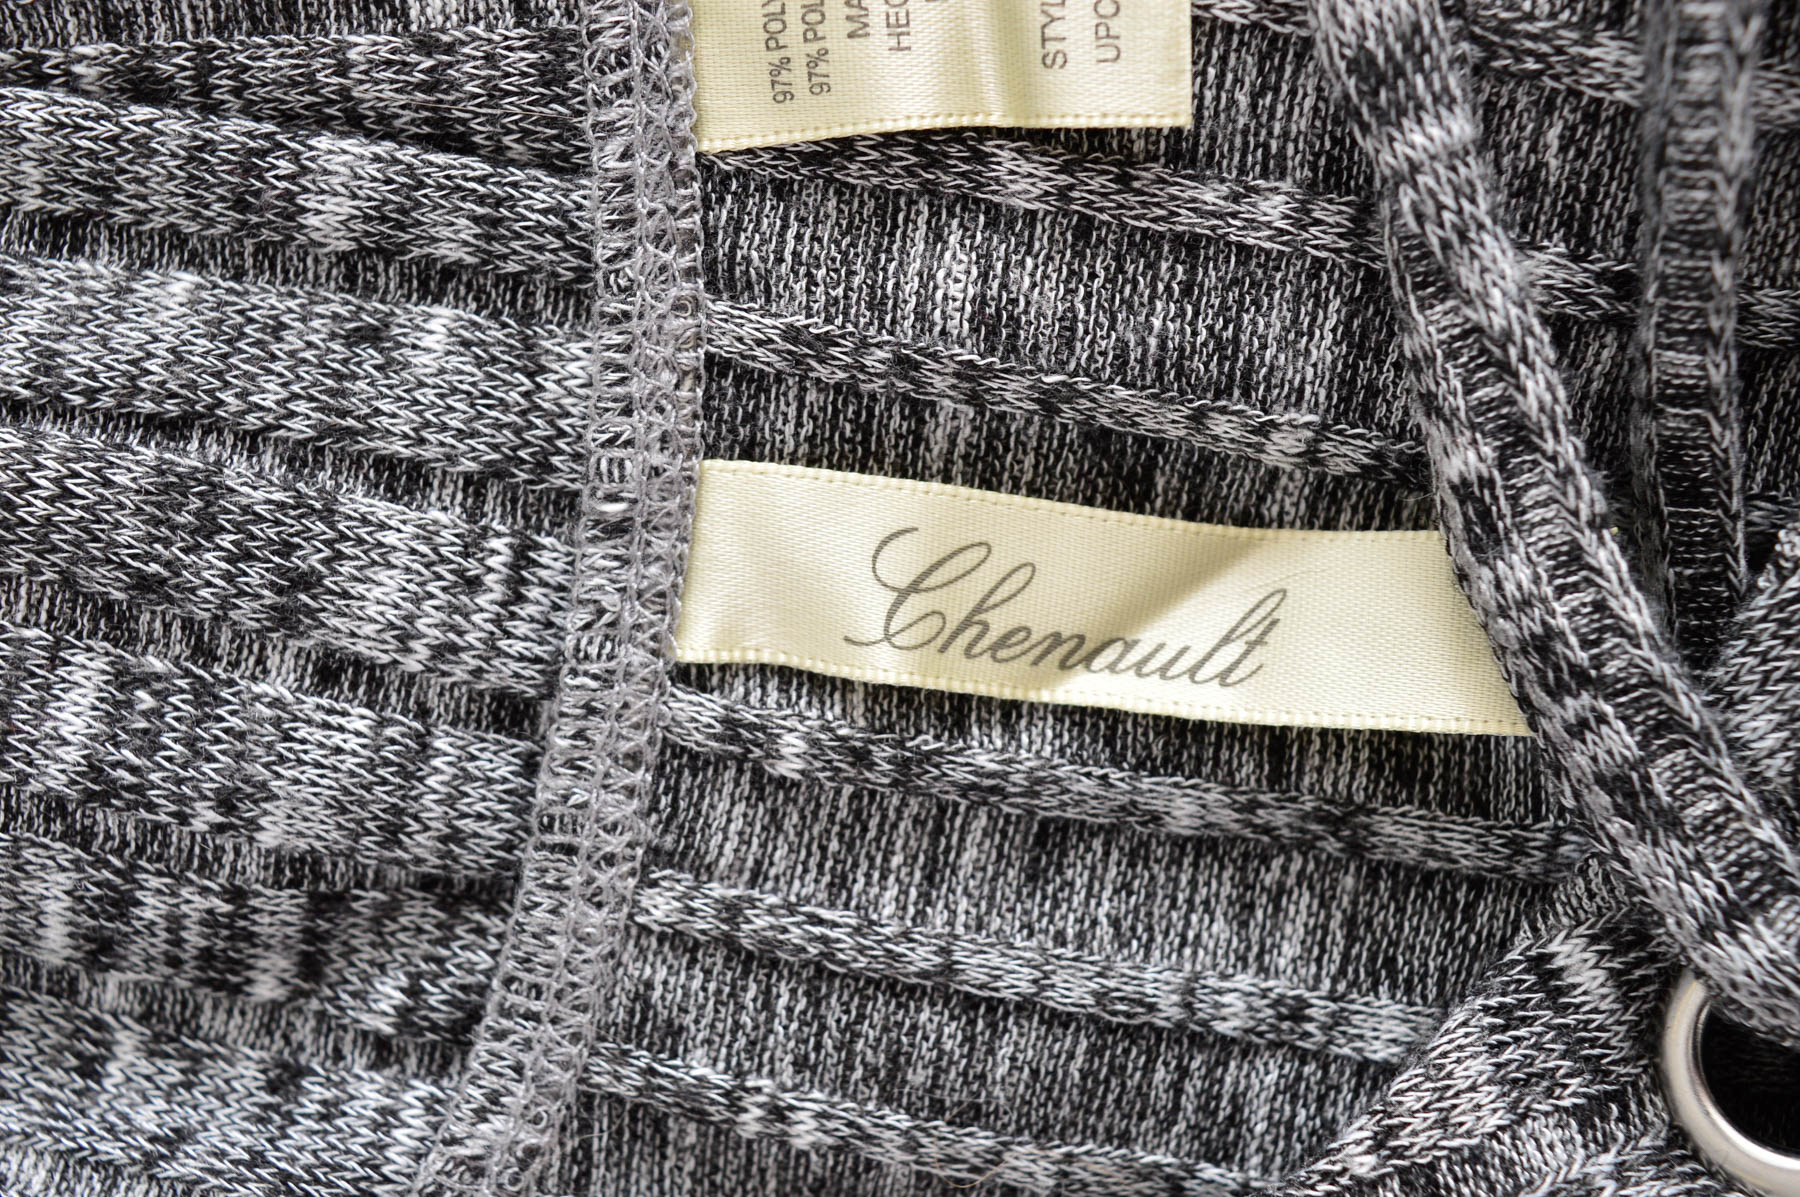 Women's sweater - Chenault - 2